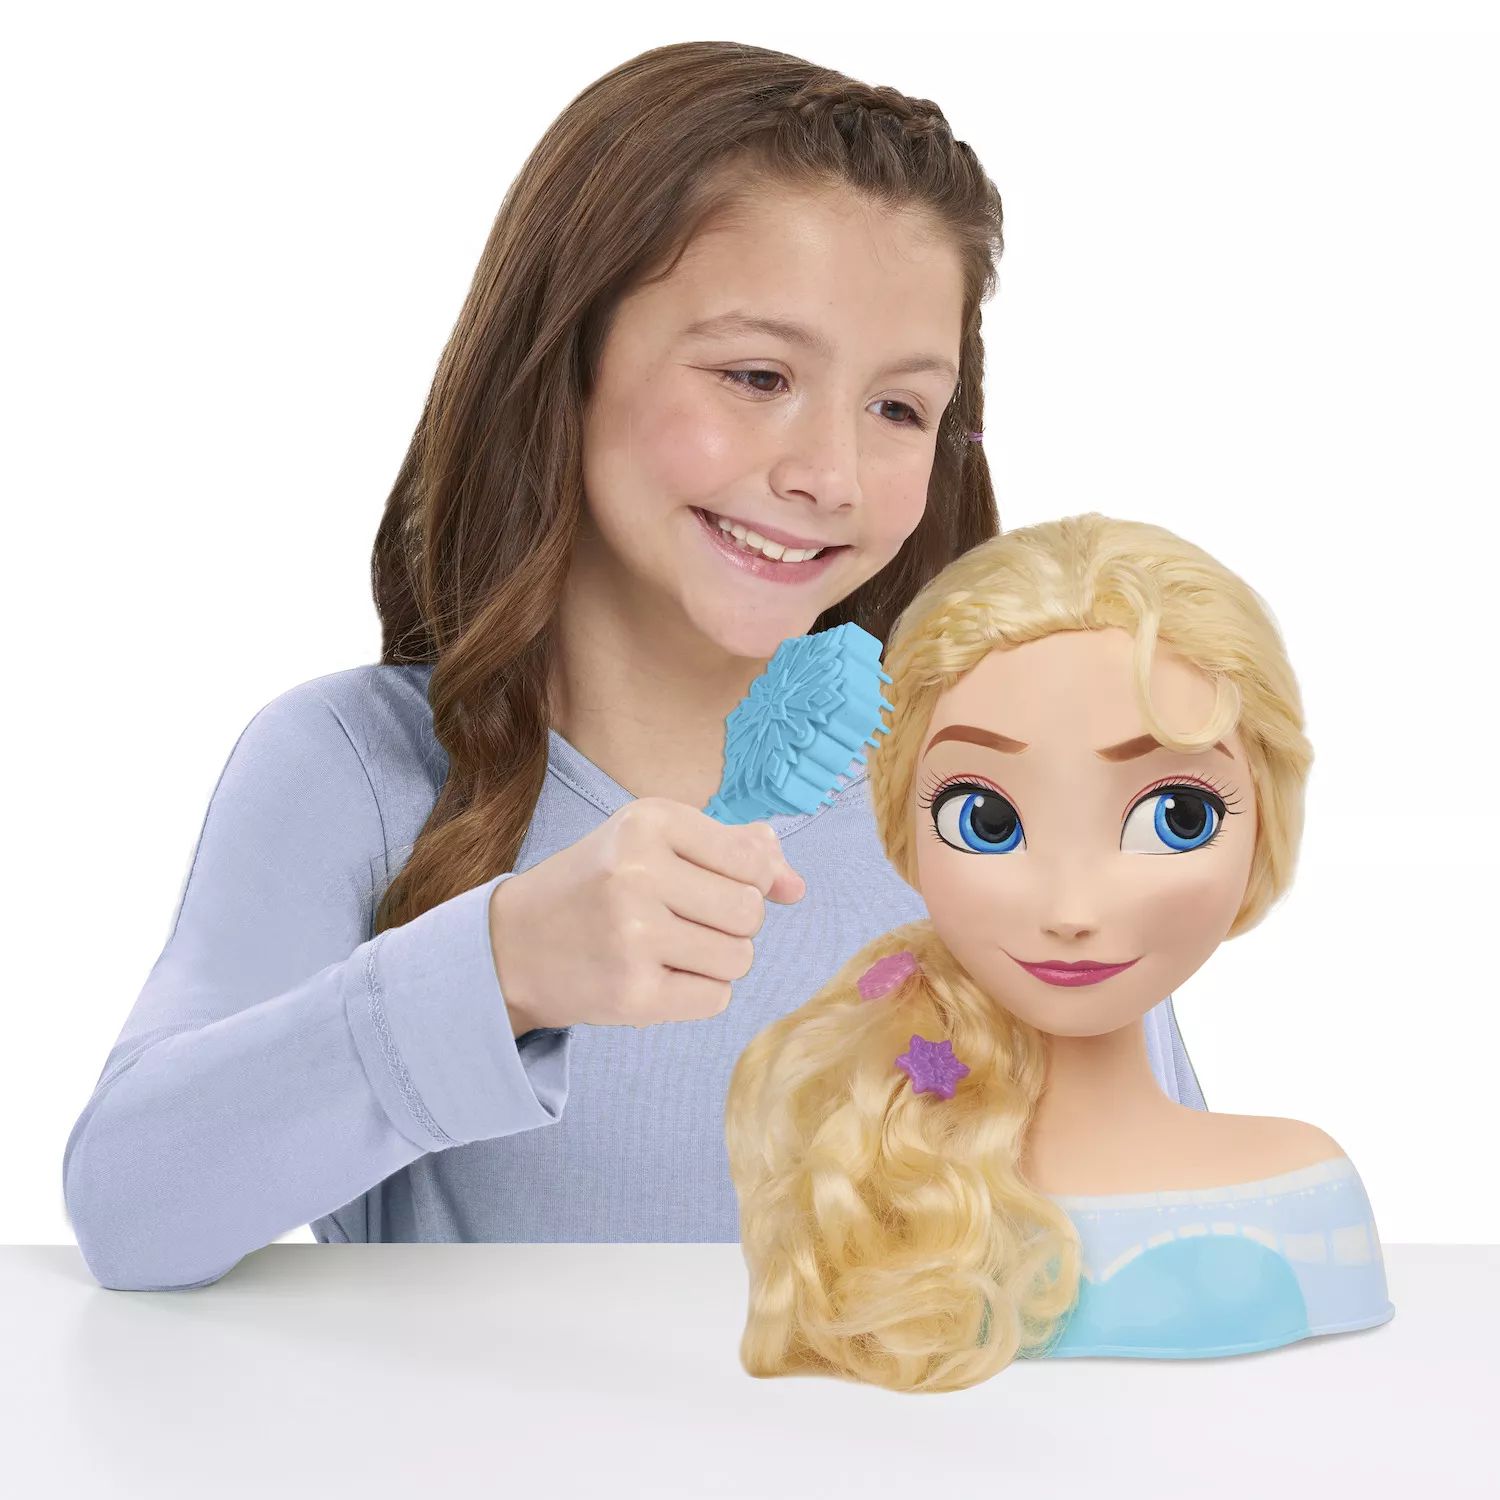 Базовая прическа Эльзы Disney's Frozen от Just Play Just Play